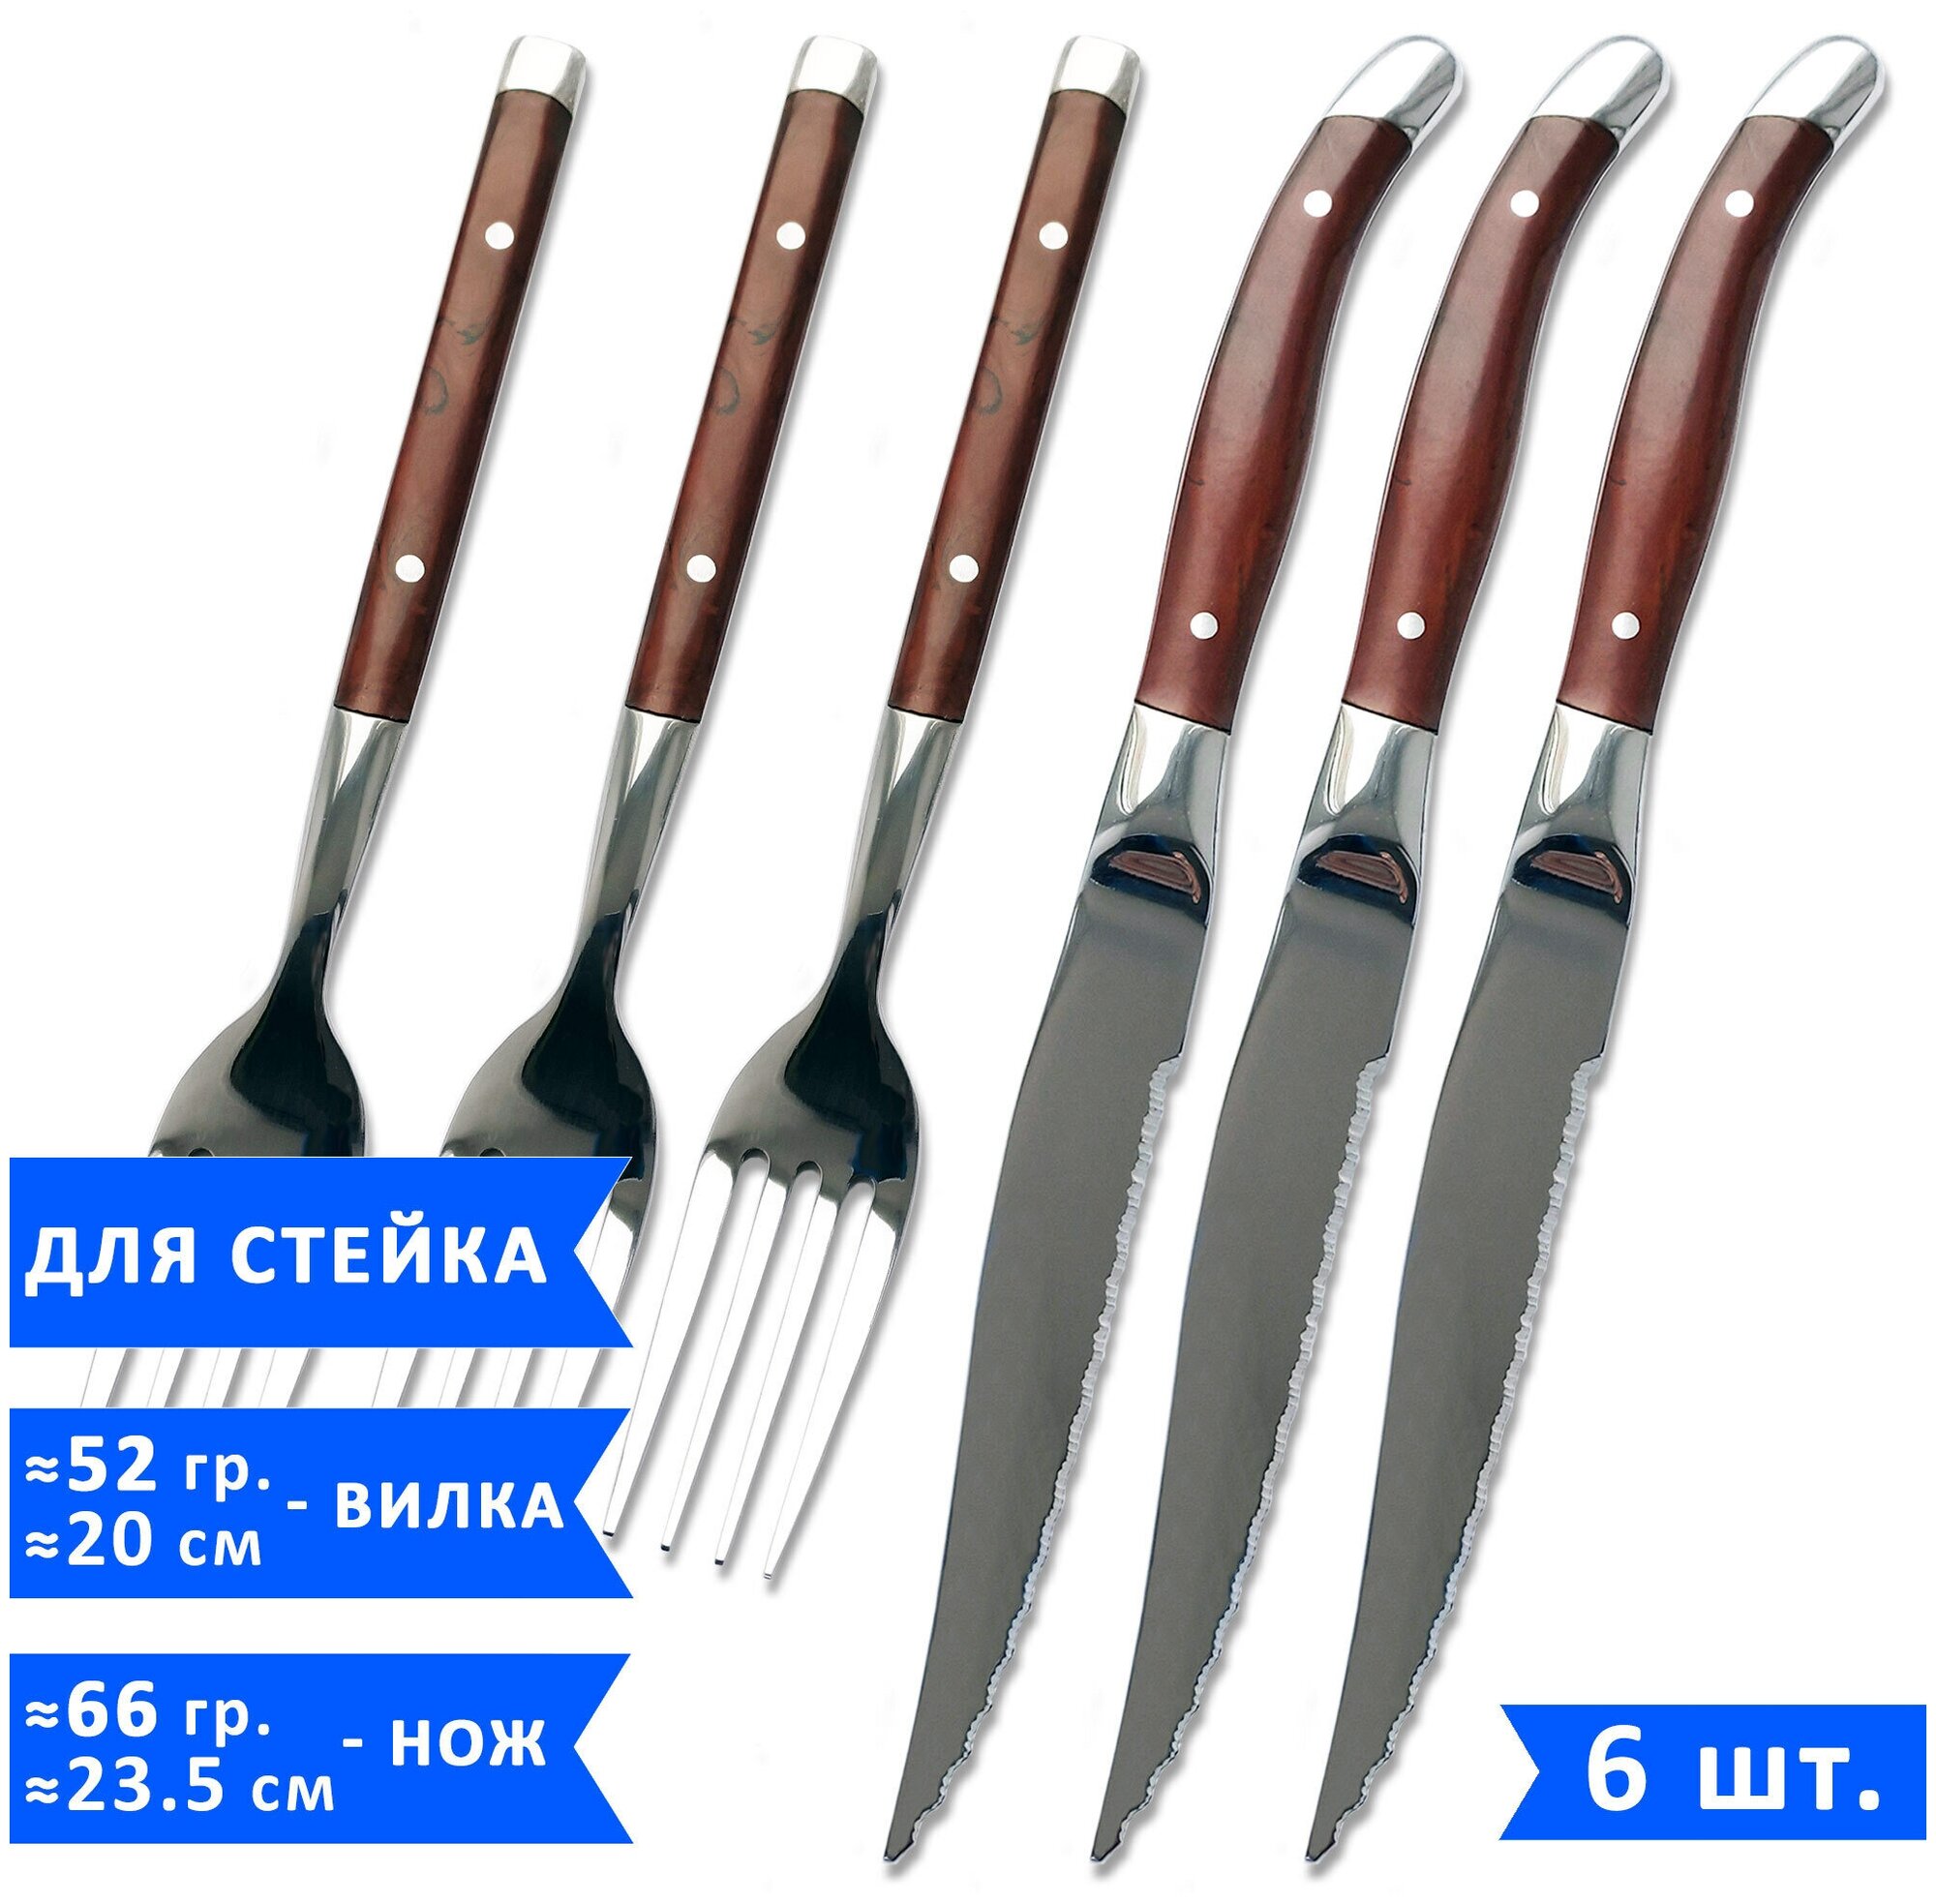 Набор столовых приборов для стейка VELER (3 ножа для стейка 235 см и 3 вилки 20 см) нержавеющая сталь 6 предметов